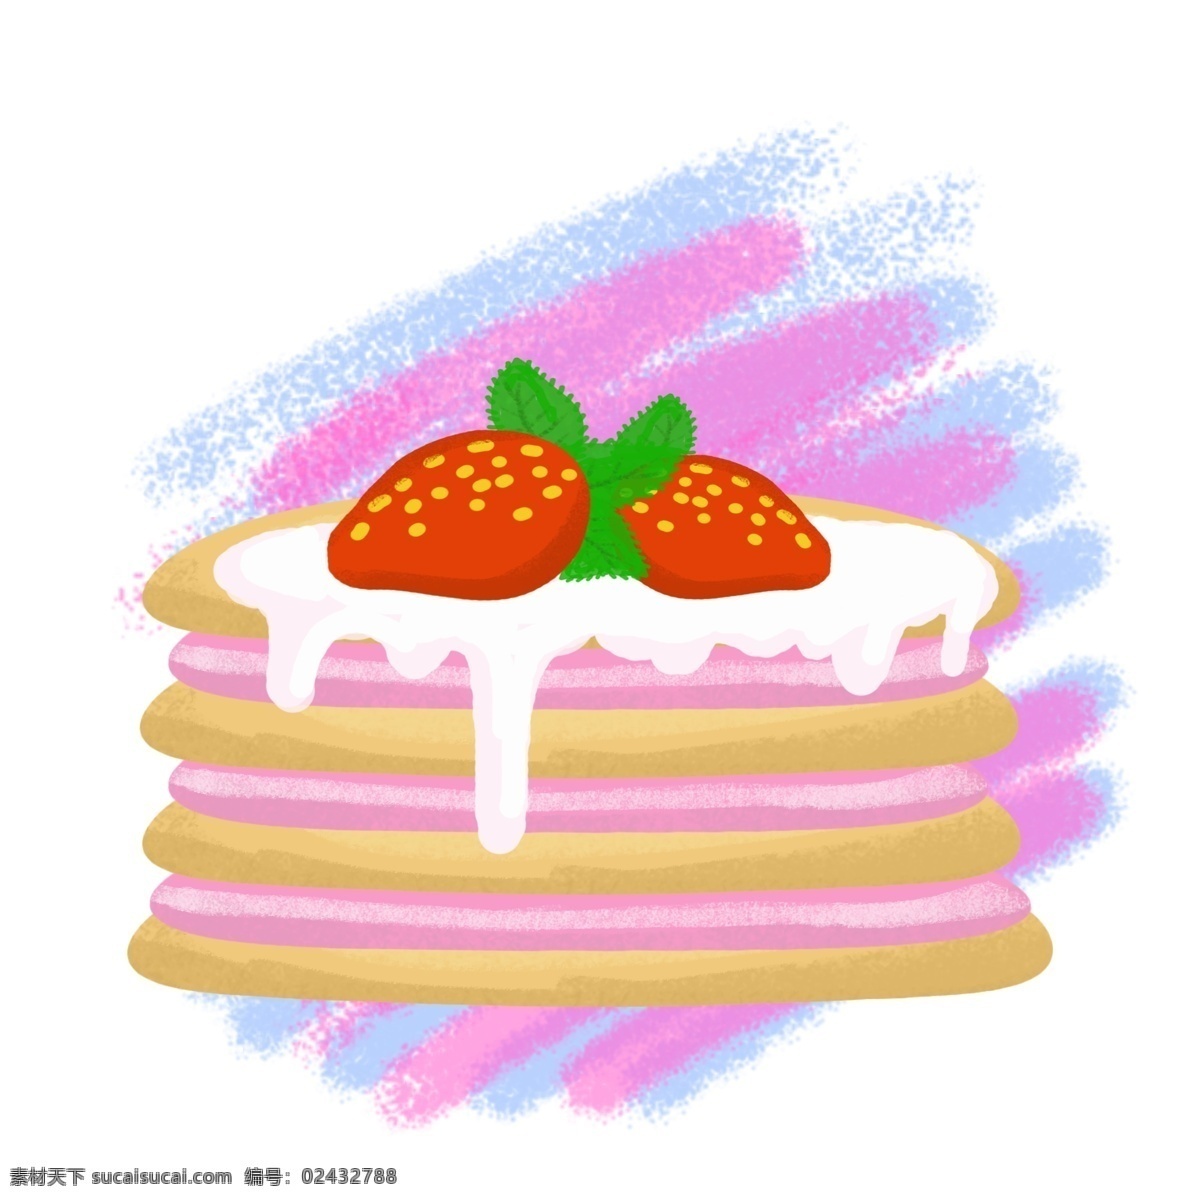 草莓 奶油 薄饼 甜点 甜品 多层甜品 薄饼蛋糕 草莓奶油 奶油薄饼派 草莓点心插画 茶点甜点 草莓甜品插画